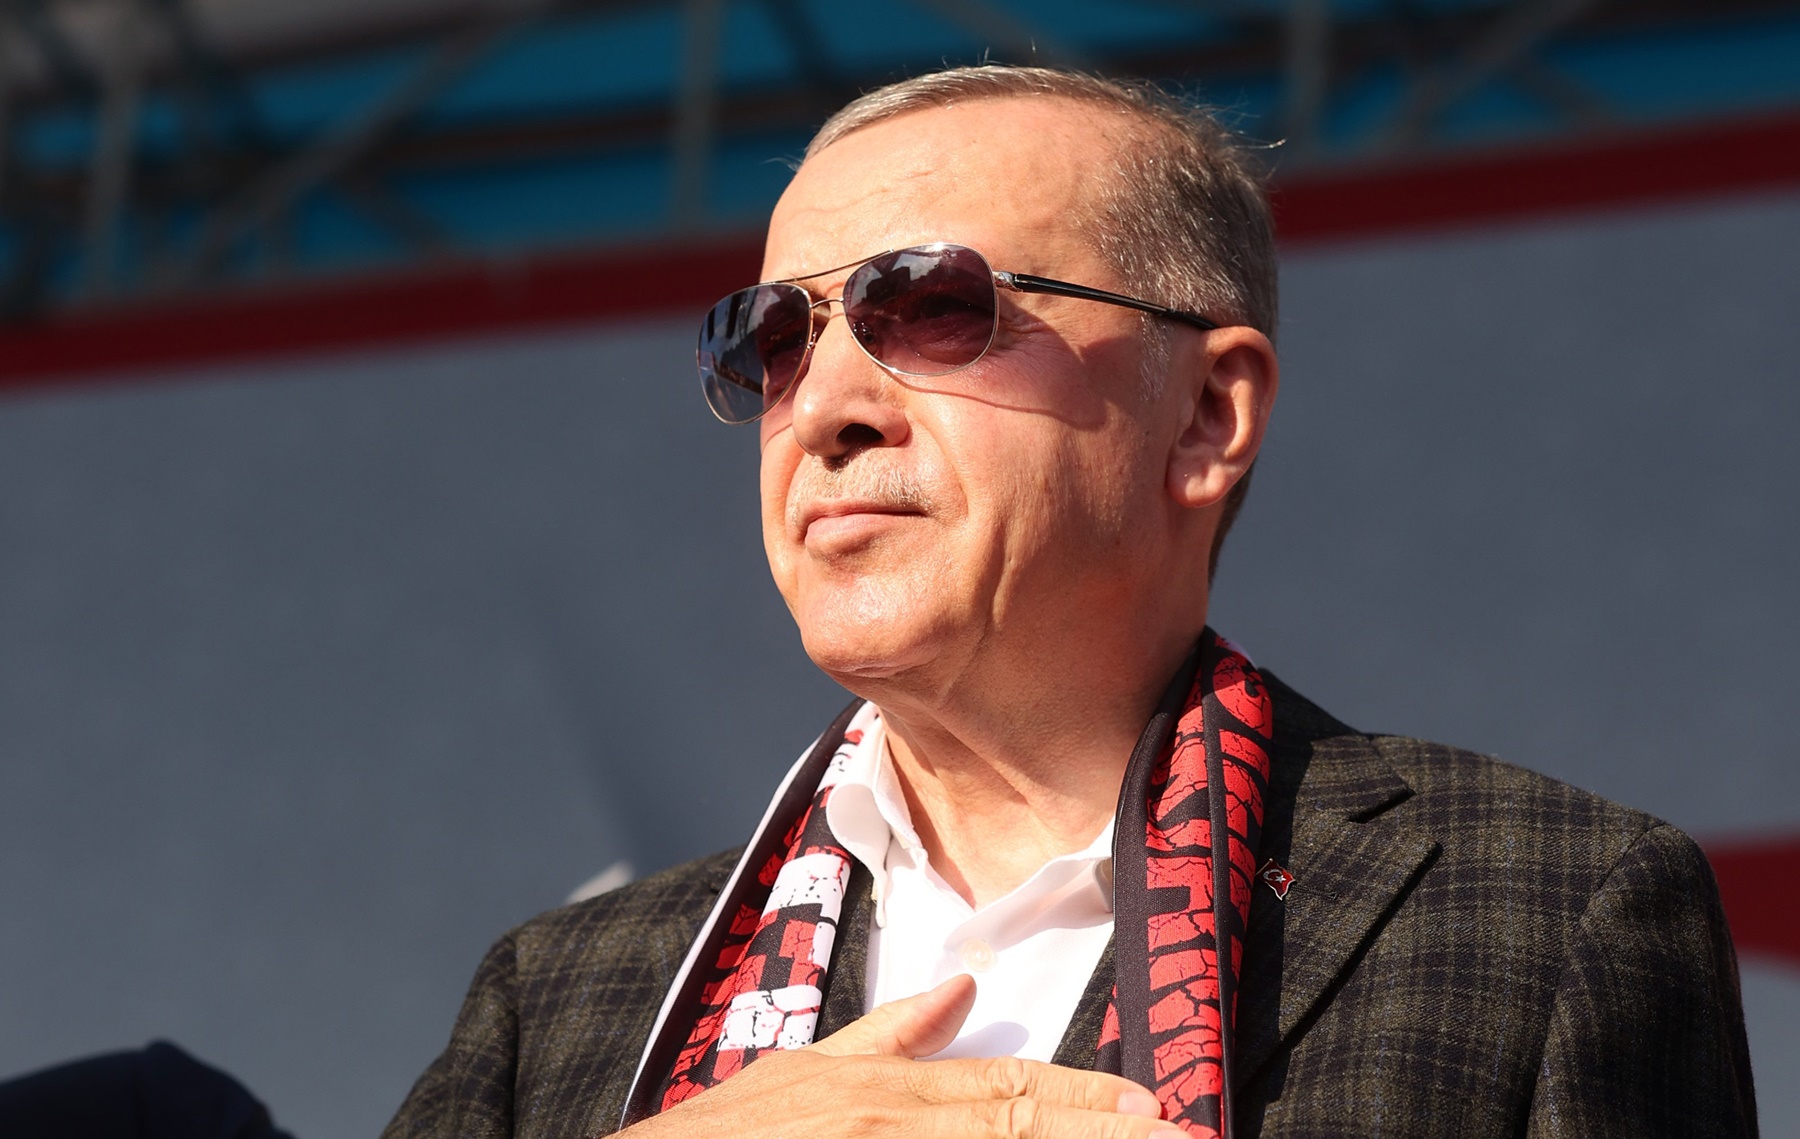 Ερντογάν ομιλία: Οι υπαρξιακές “ανησυχίες” του Τούρκου προέδρου